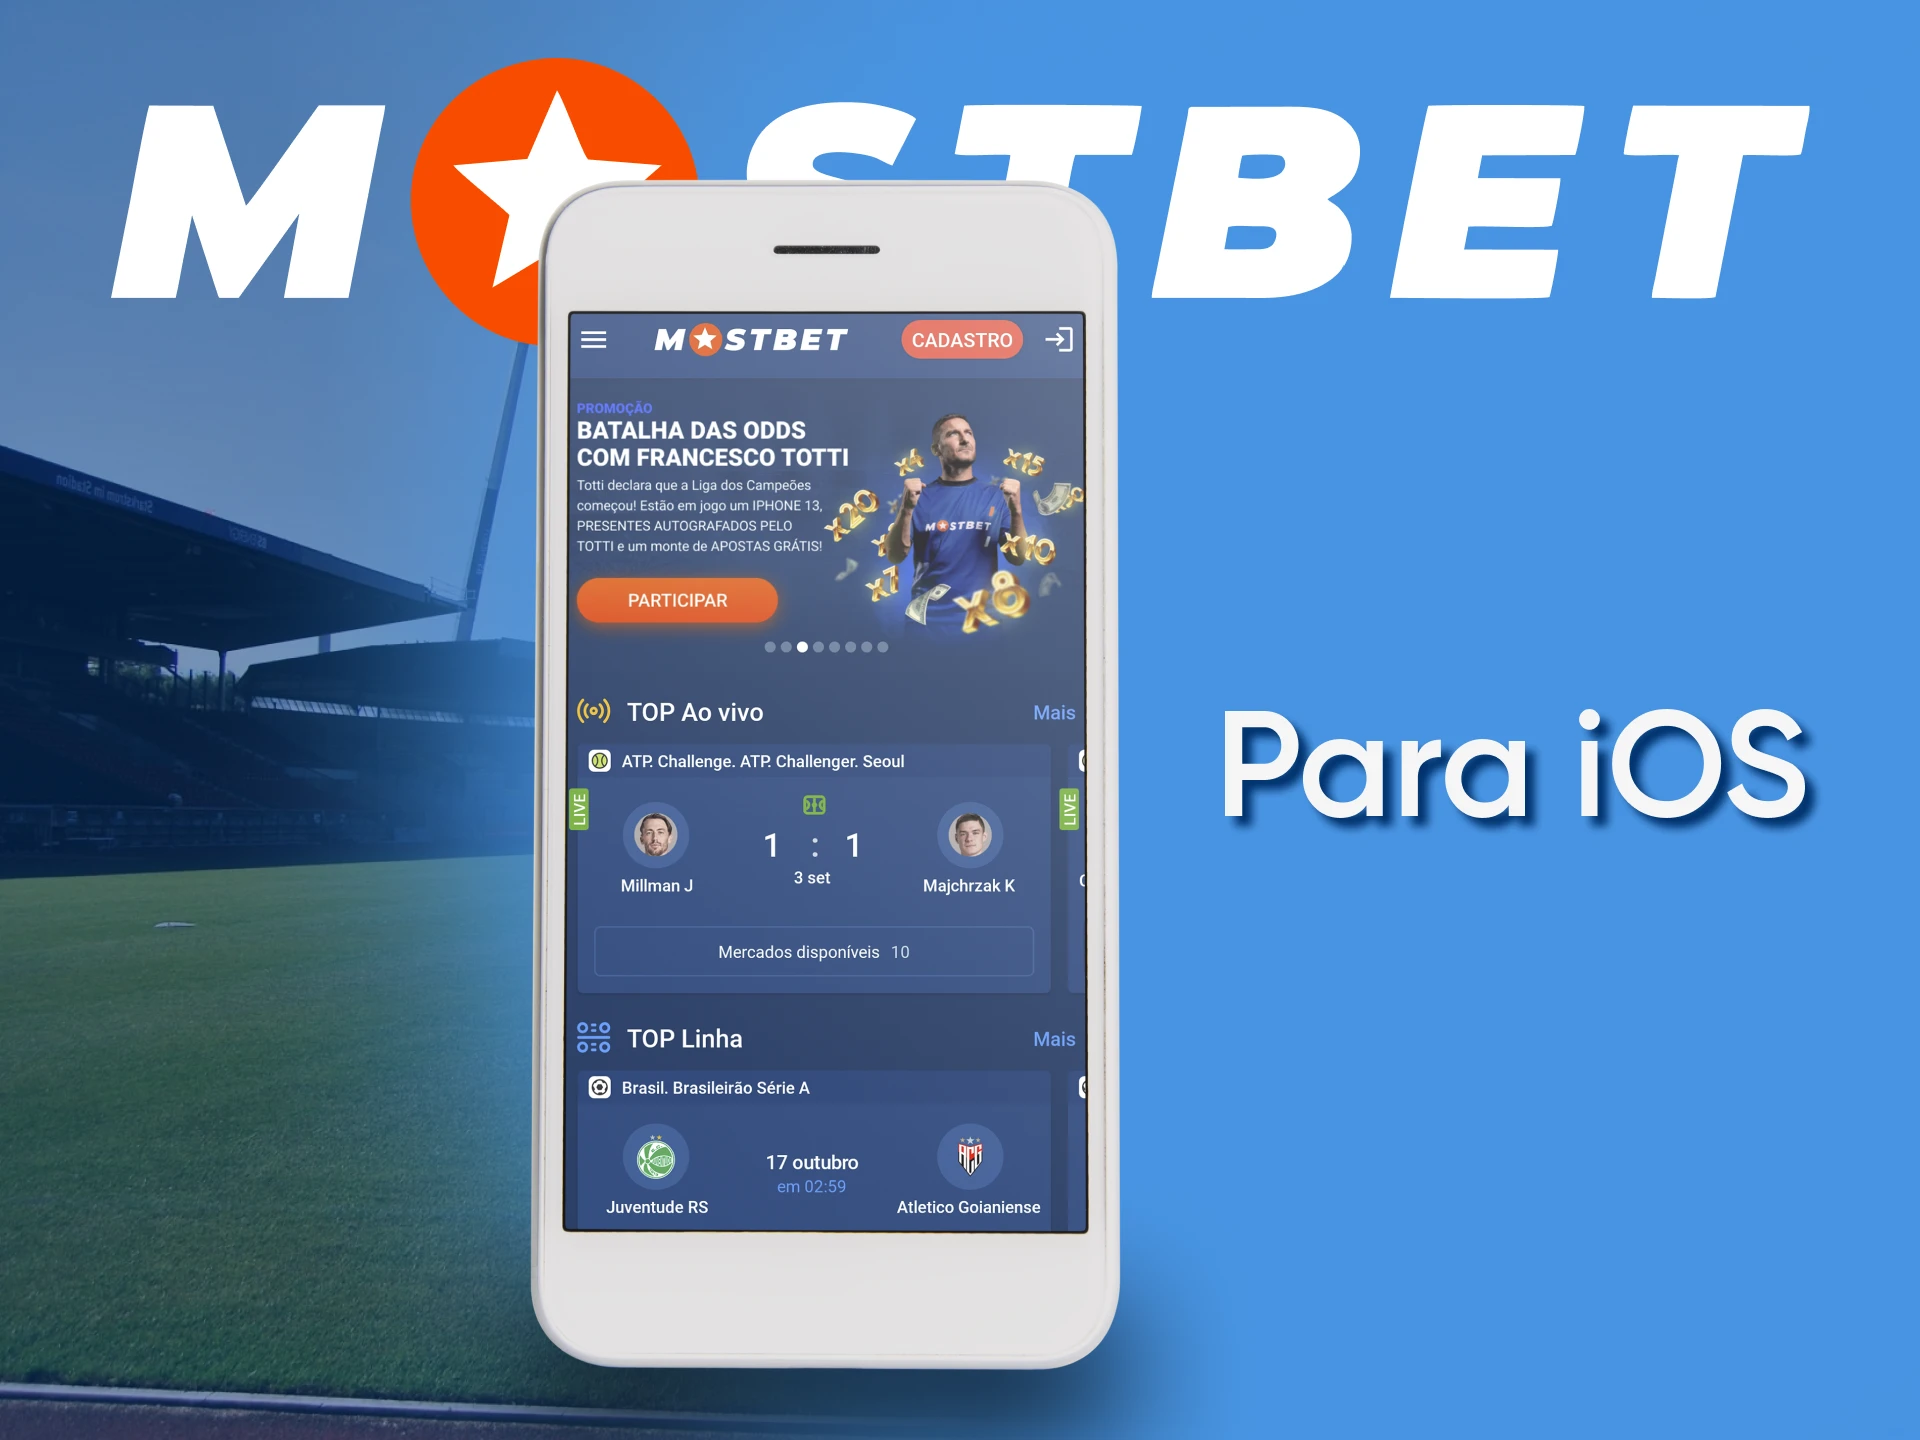 Mostbet suporta iOS para apostas e jogos de azar.